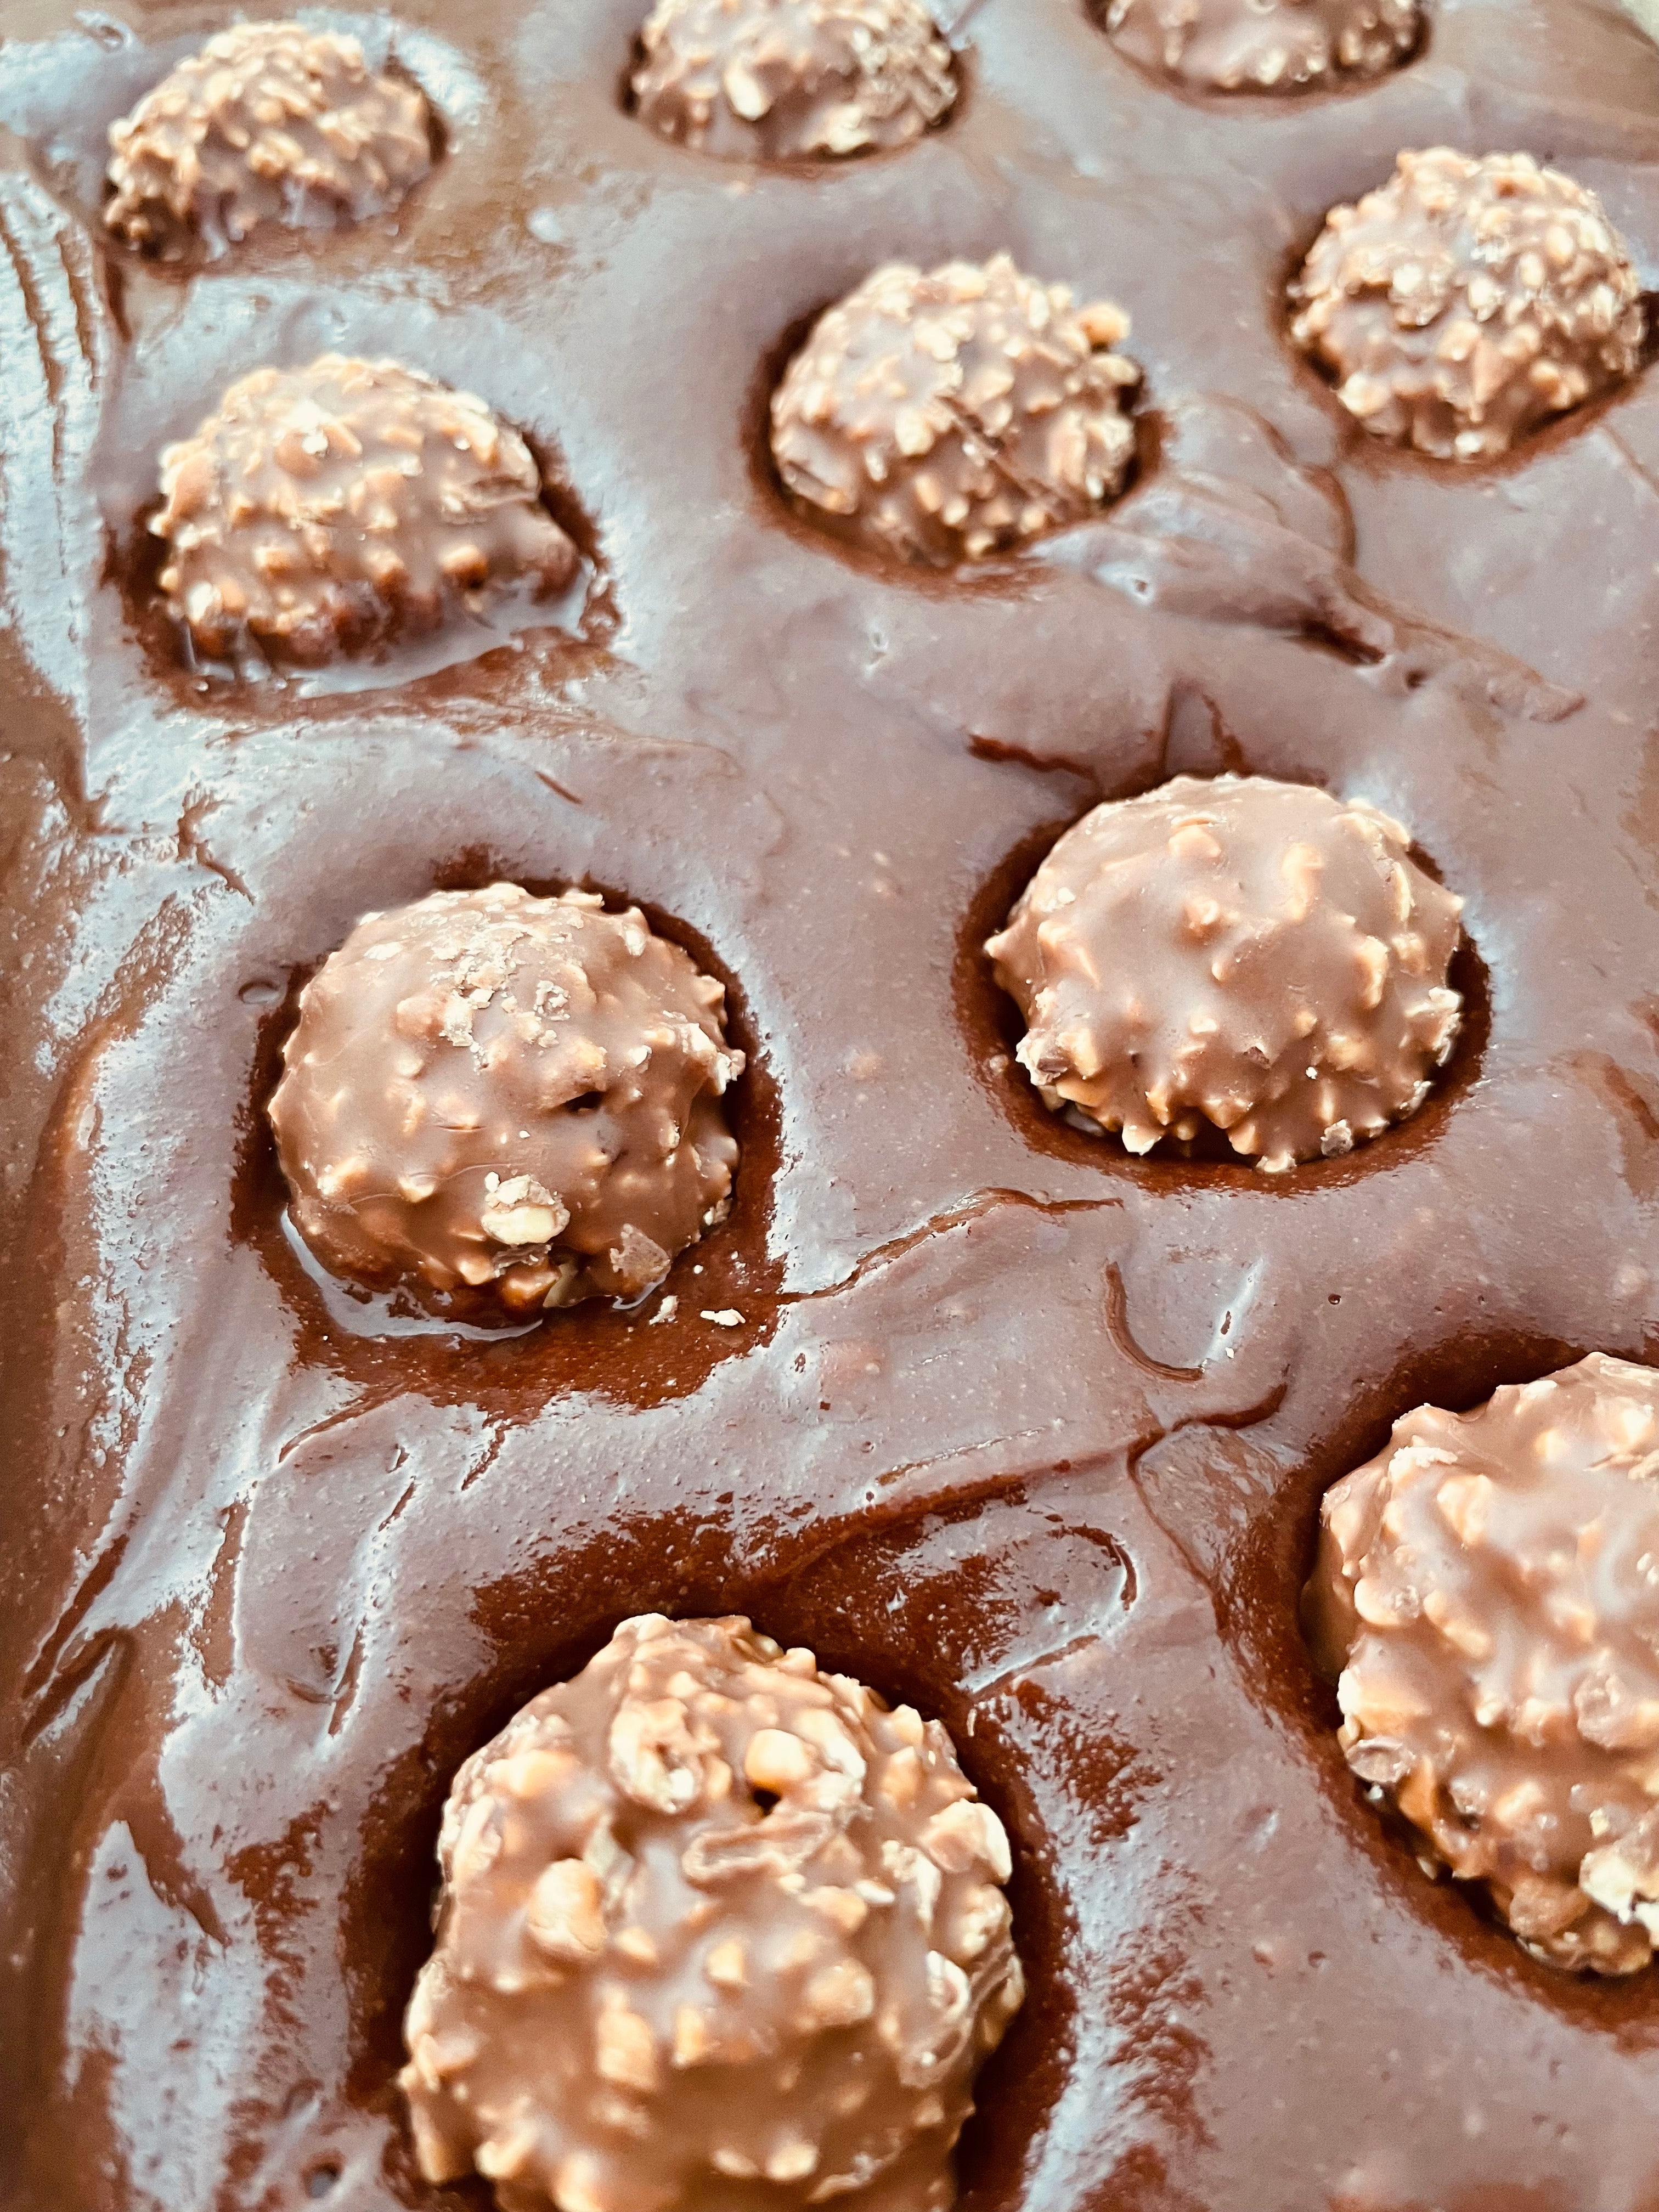 Ferrero Rocher Chocolate 8 Pieces For Ssle - Explore Belgium